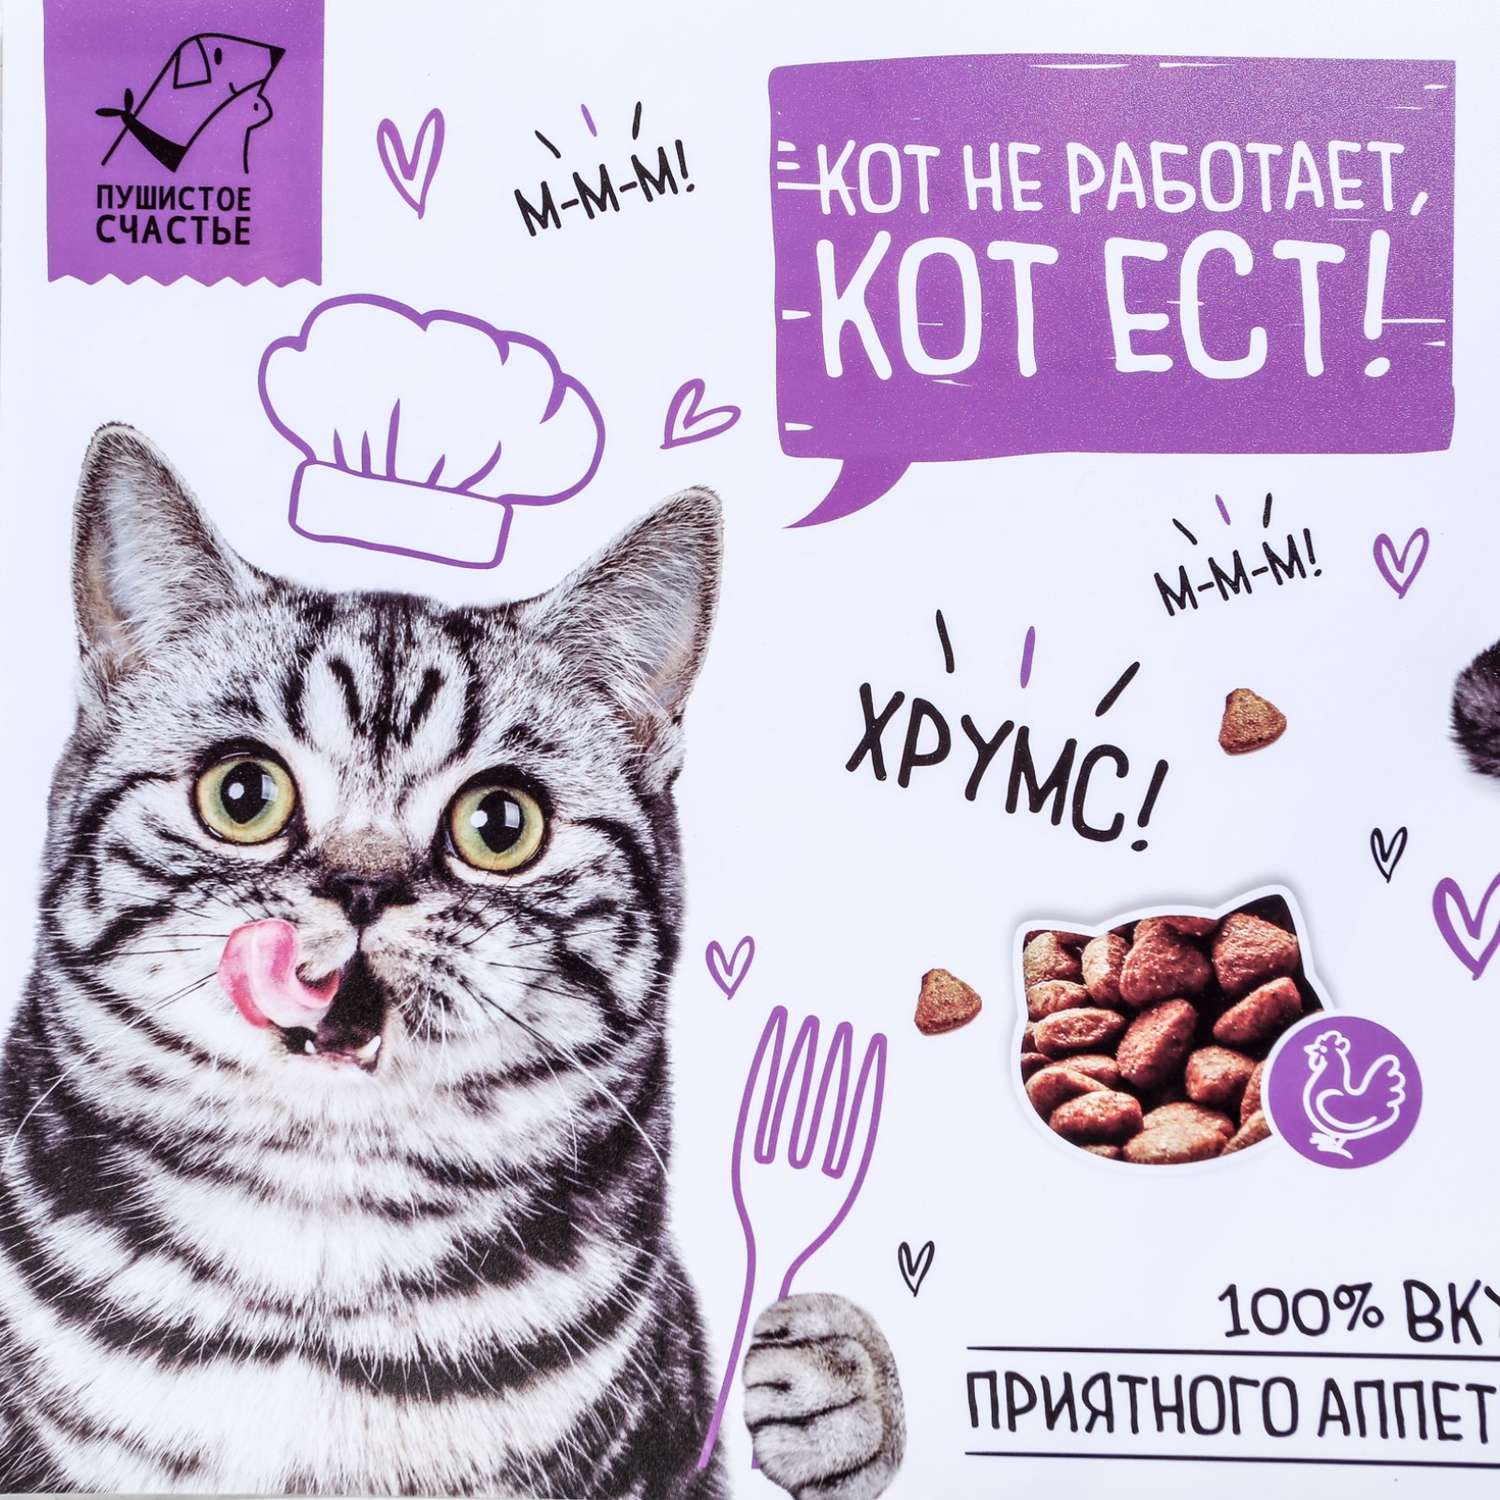 Коврик под миску Пушистое счастье «Кот не работает кот ест!» 43х28 см - фото 4